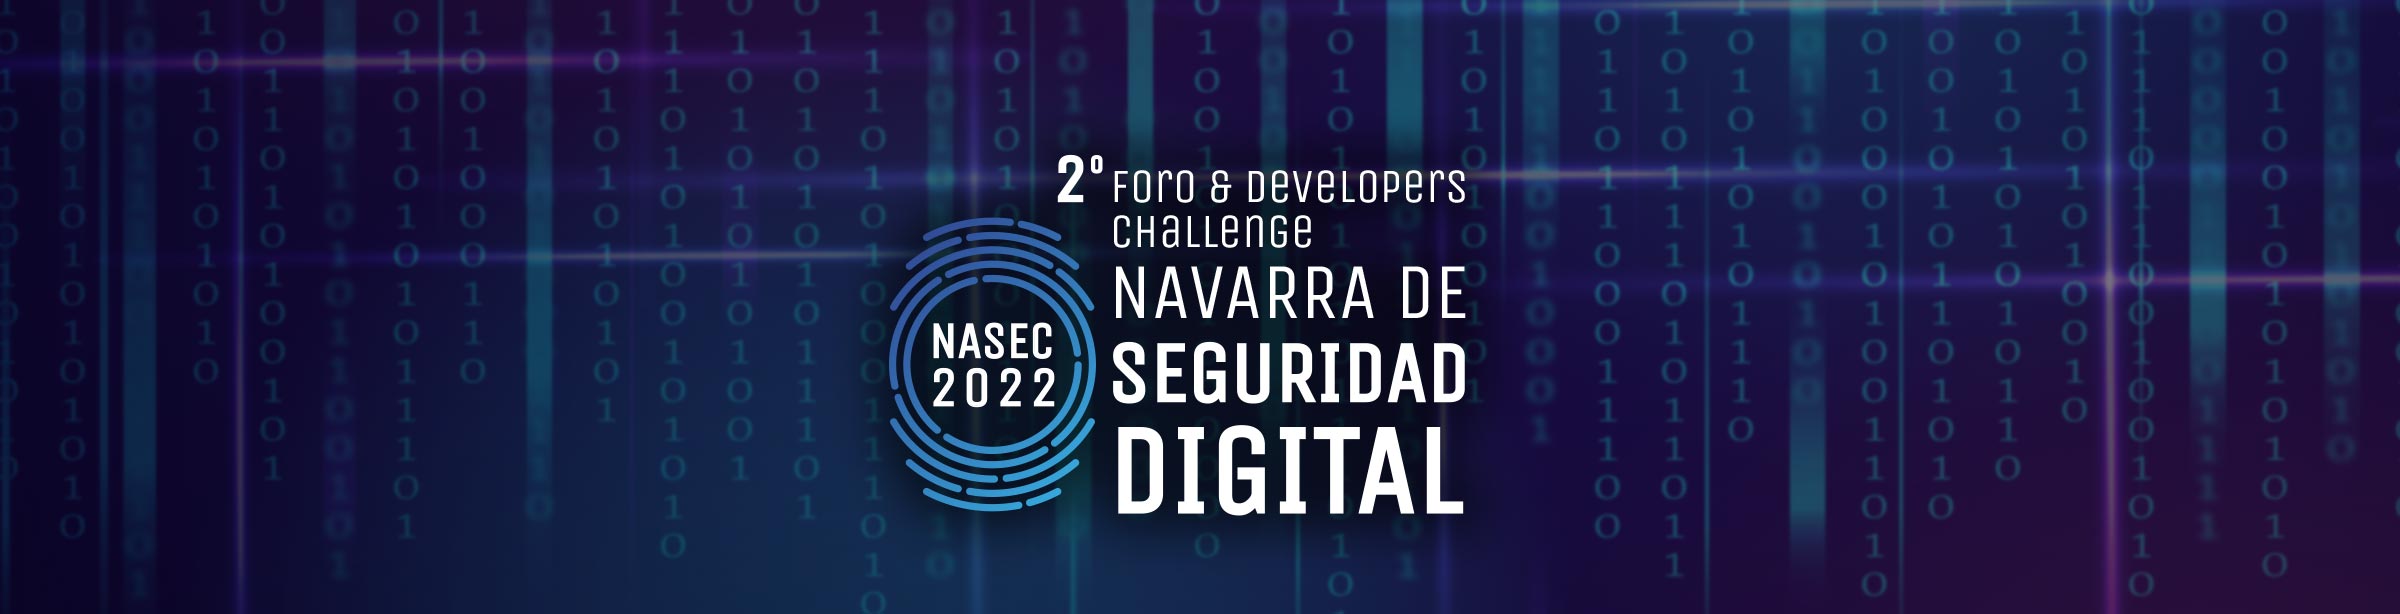 Foro Navarra de Seguridad Digital